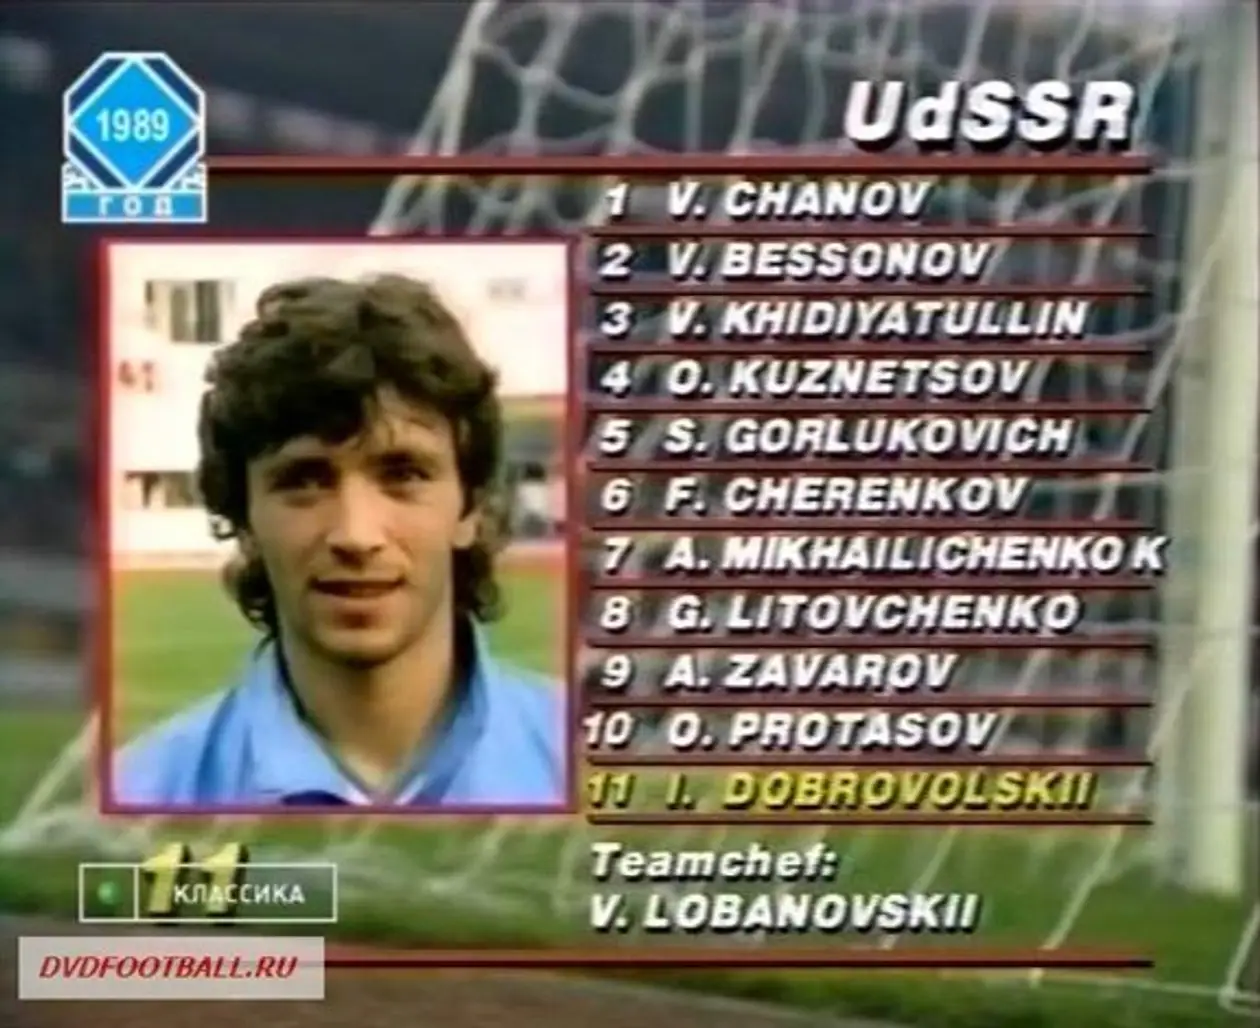 1989. Винзавод и Там, где витают Амуры на фоне Австрия vs СССР 0:0